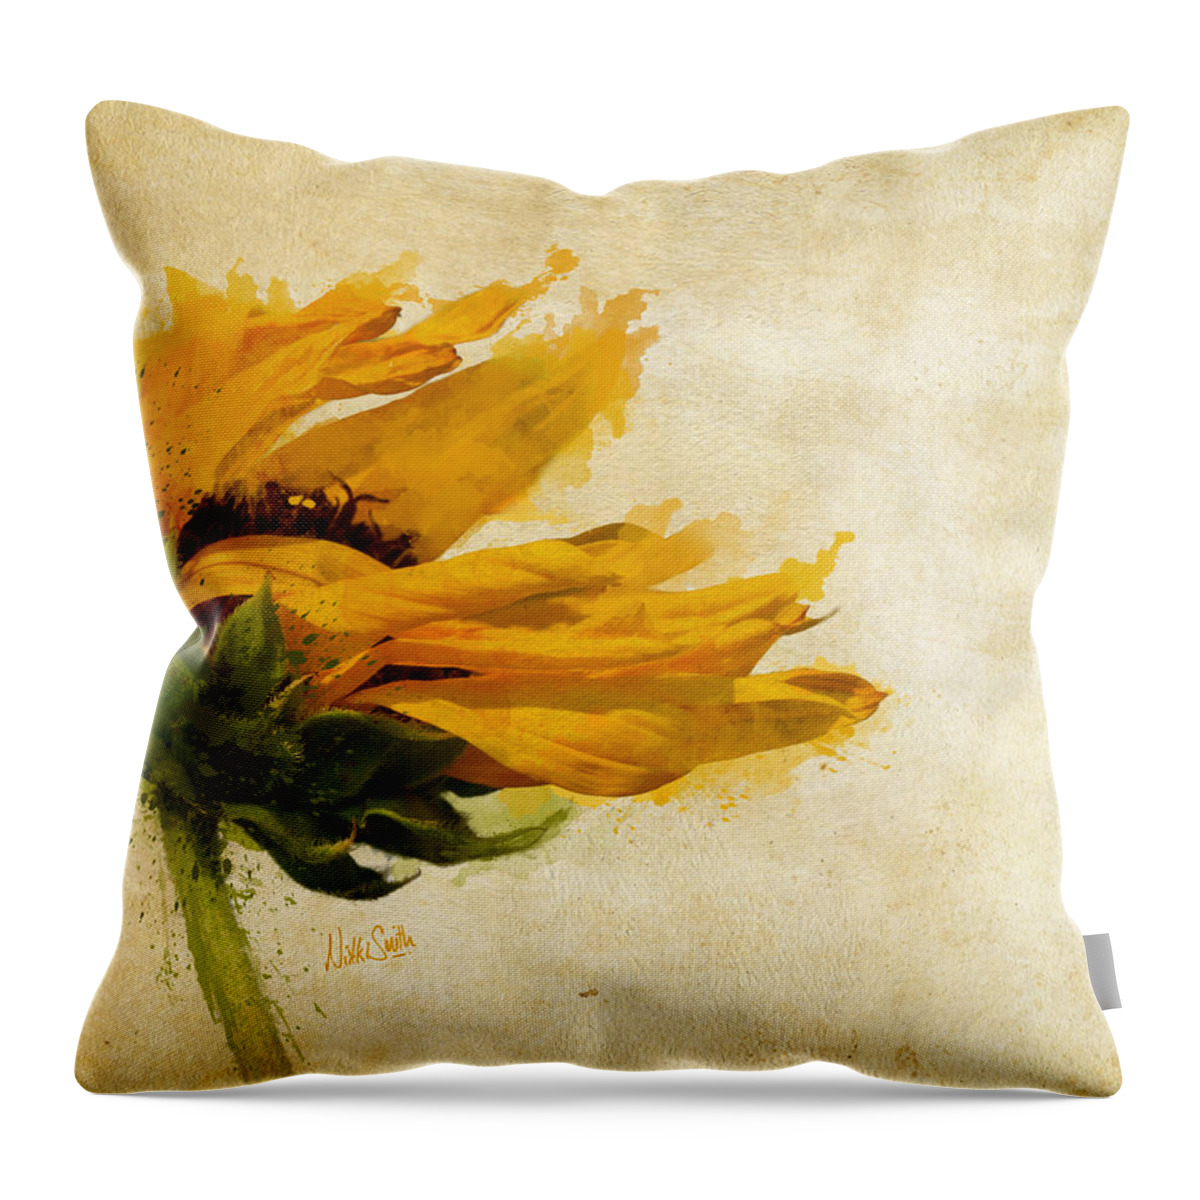 Sunflower Throw Pillow featuring the digital art Sunflower Breezes by Nikki Marie Smith